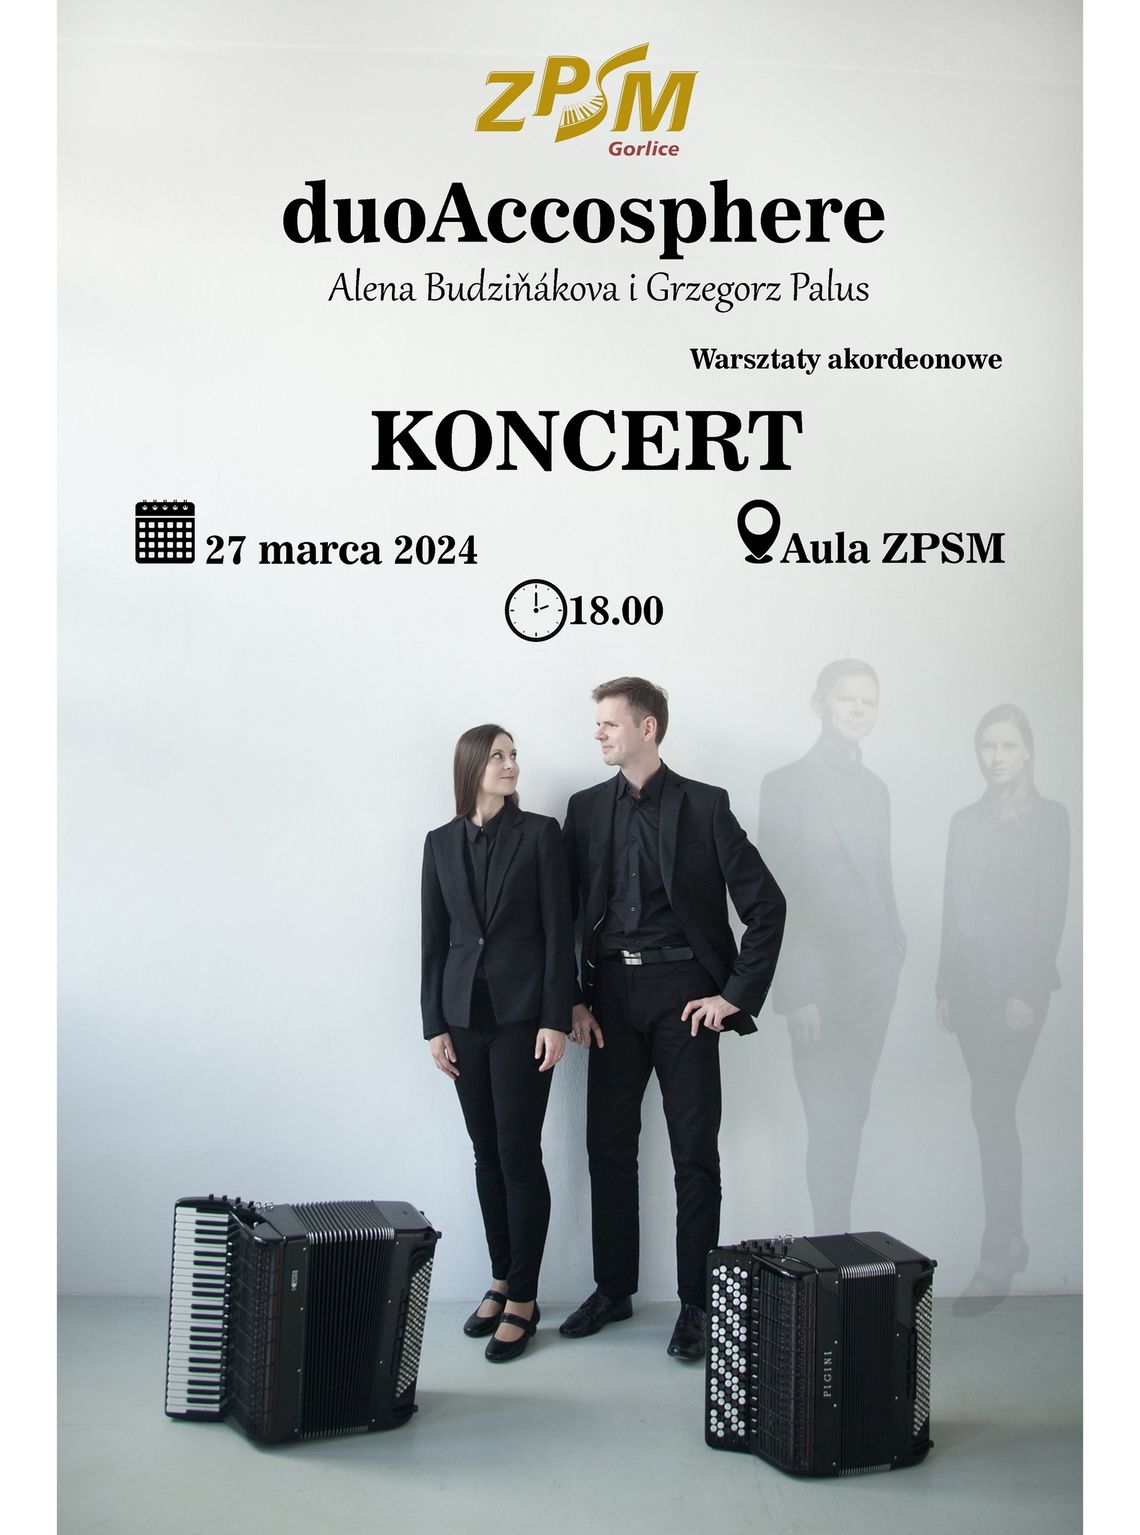 Koncert duoAccosphere | halogorlice.info